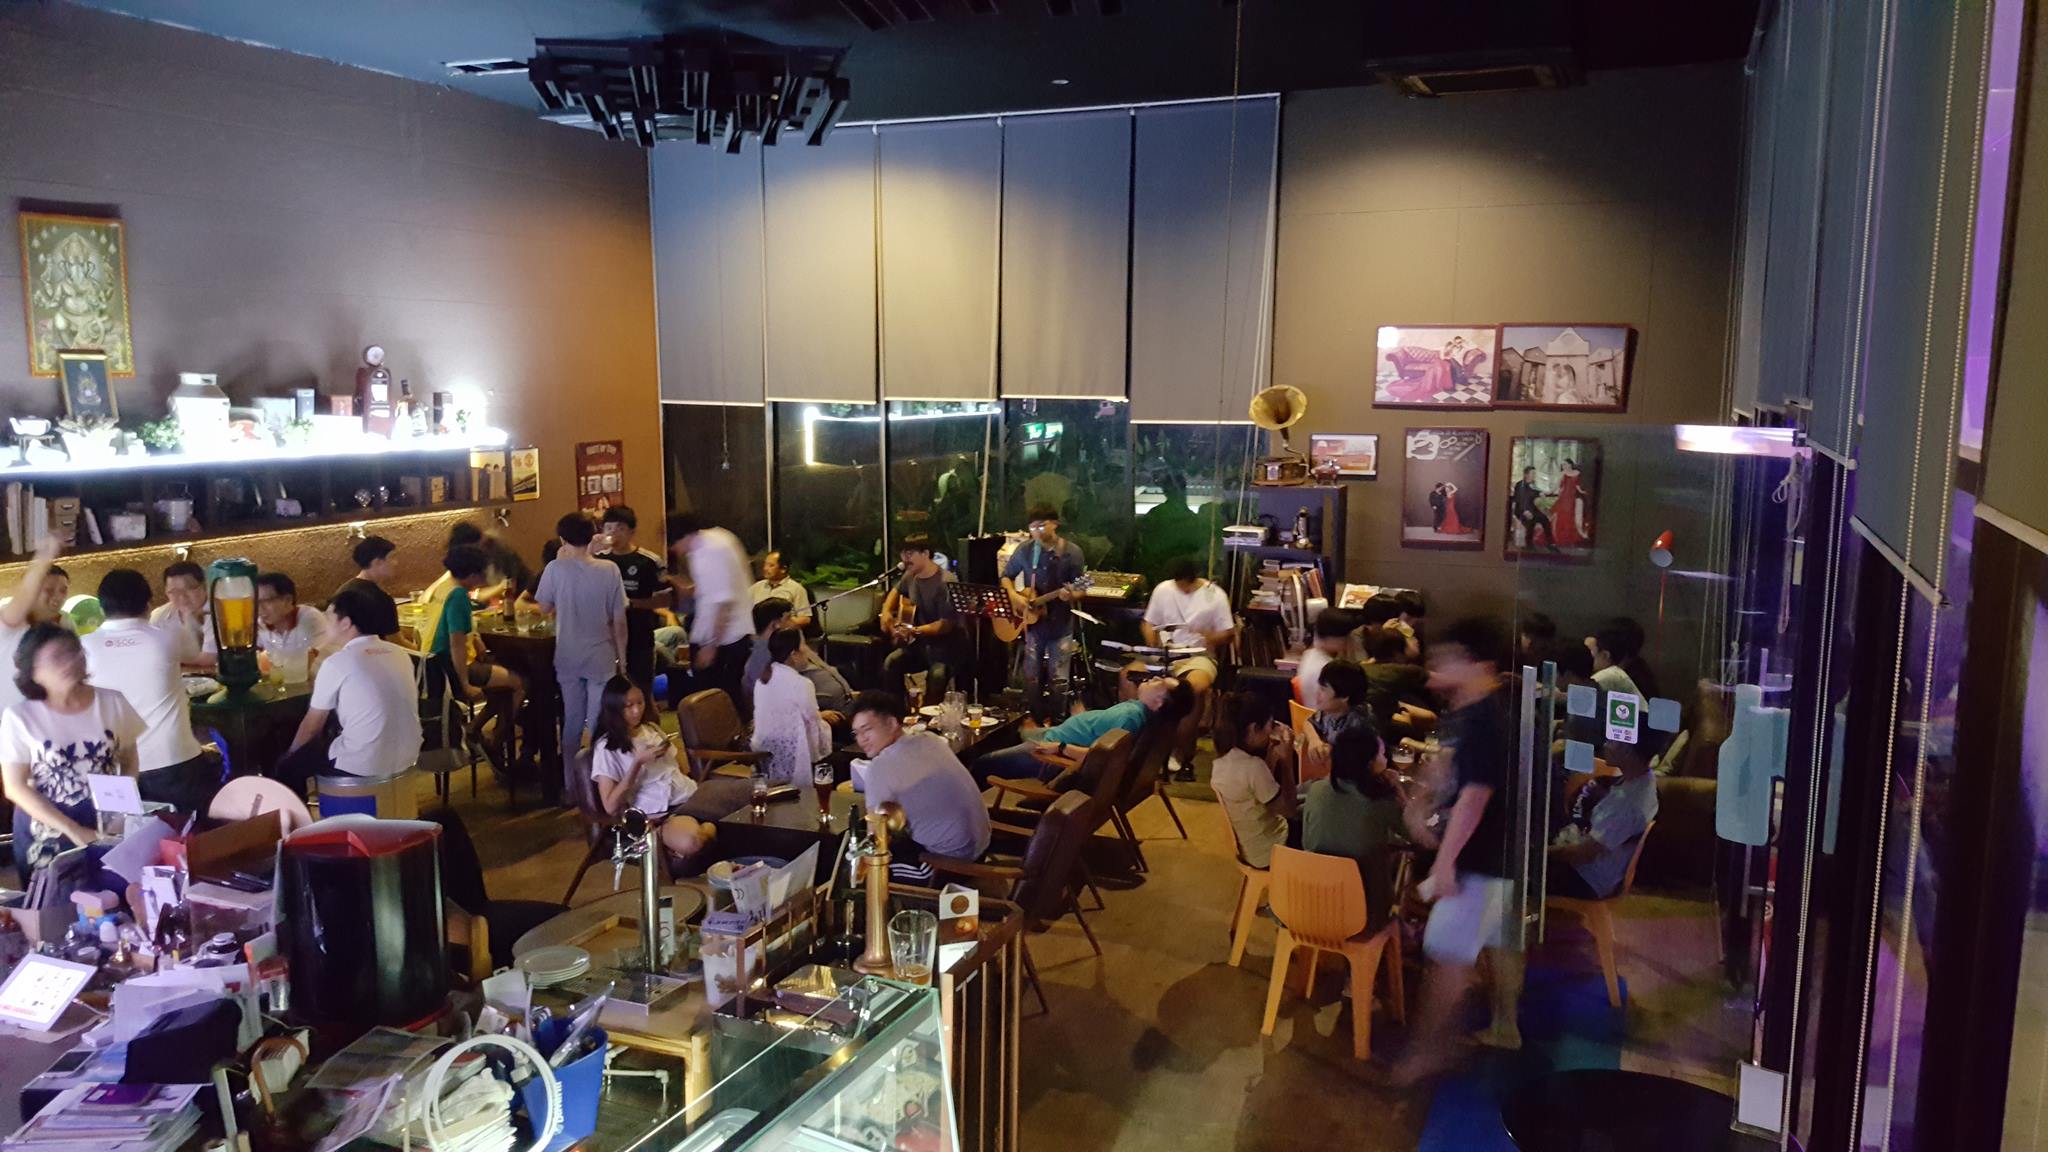 เรสเตอร์ เดย์ คาเฟ่ แอนด์ เรสเตอรองท์ (Rest'er Day Cafe&Restaurant) : กรุงเทพมหานคร (Bangkok)